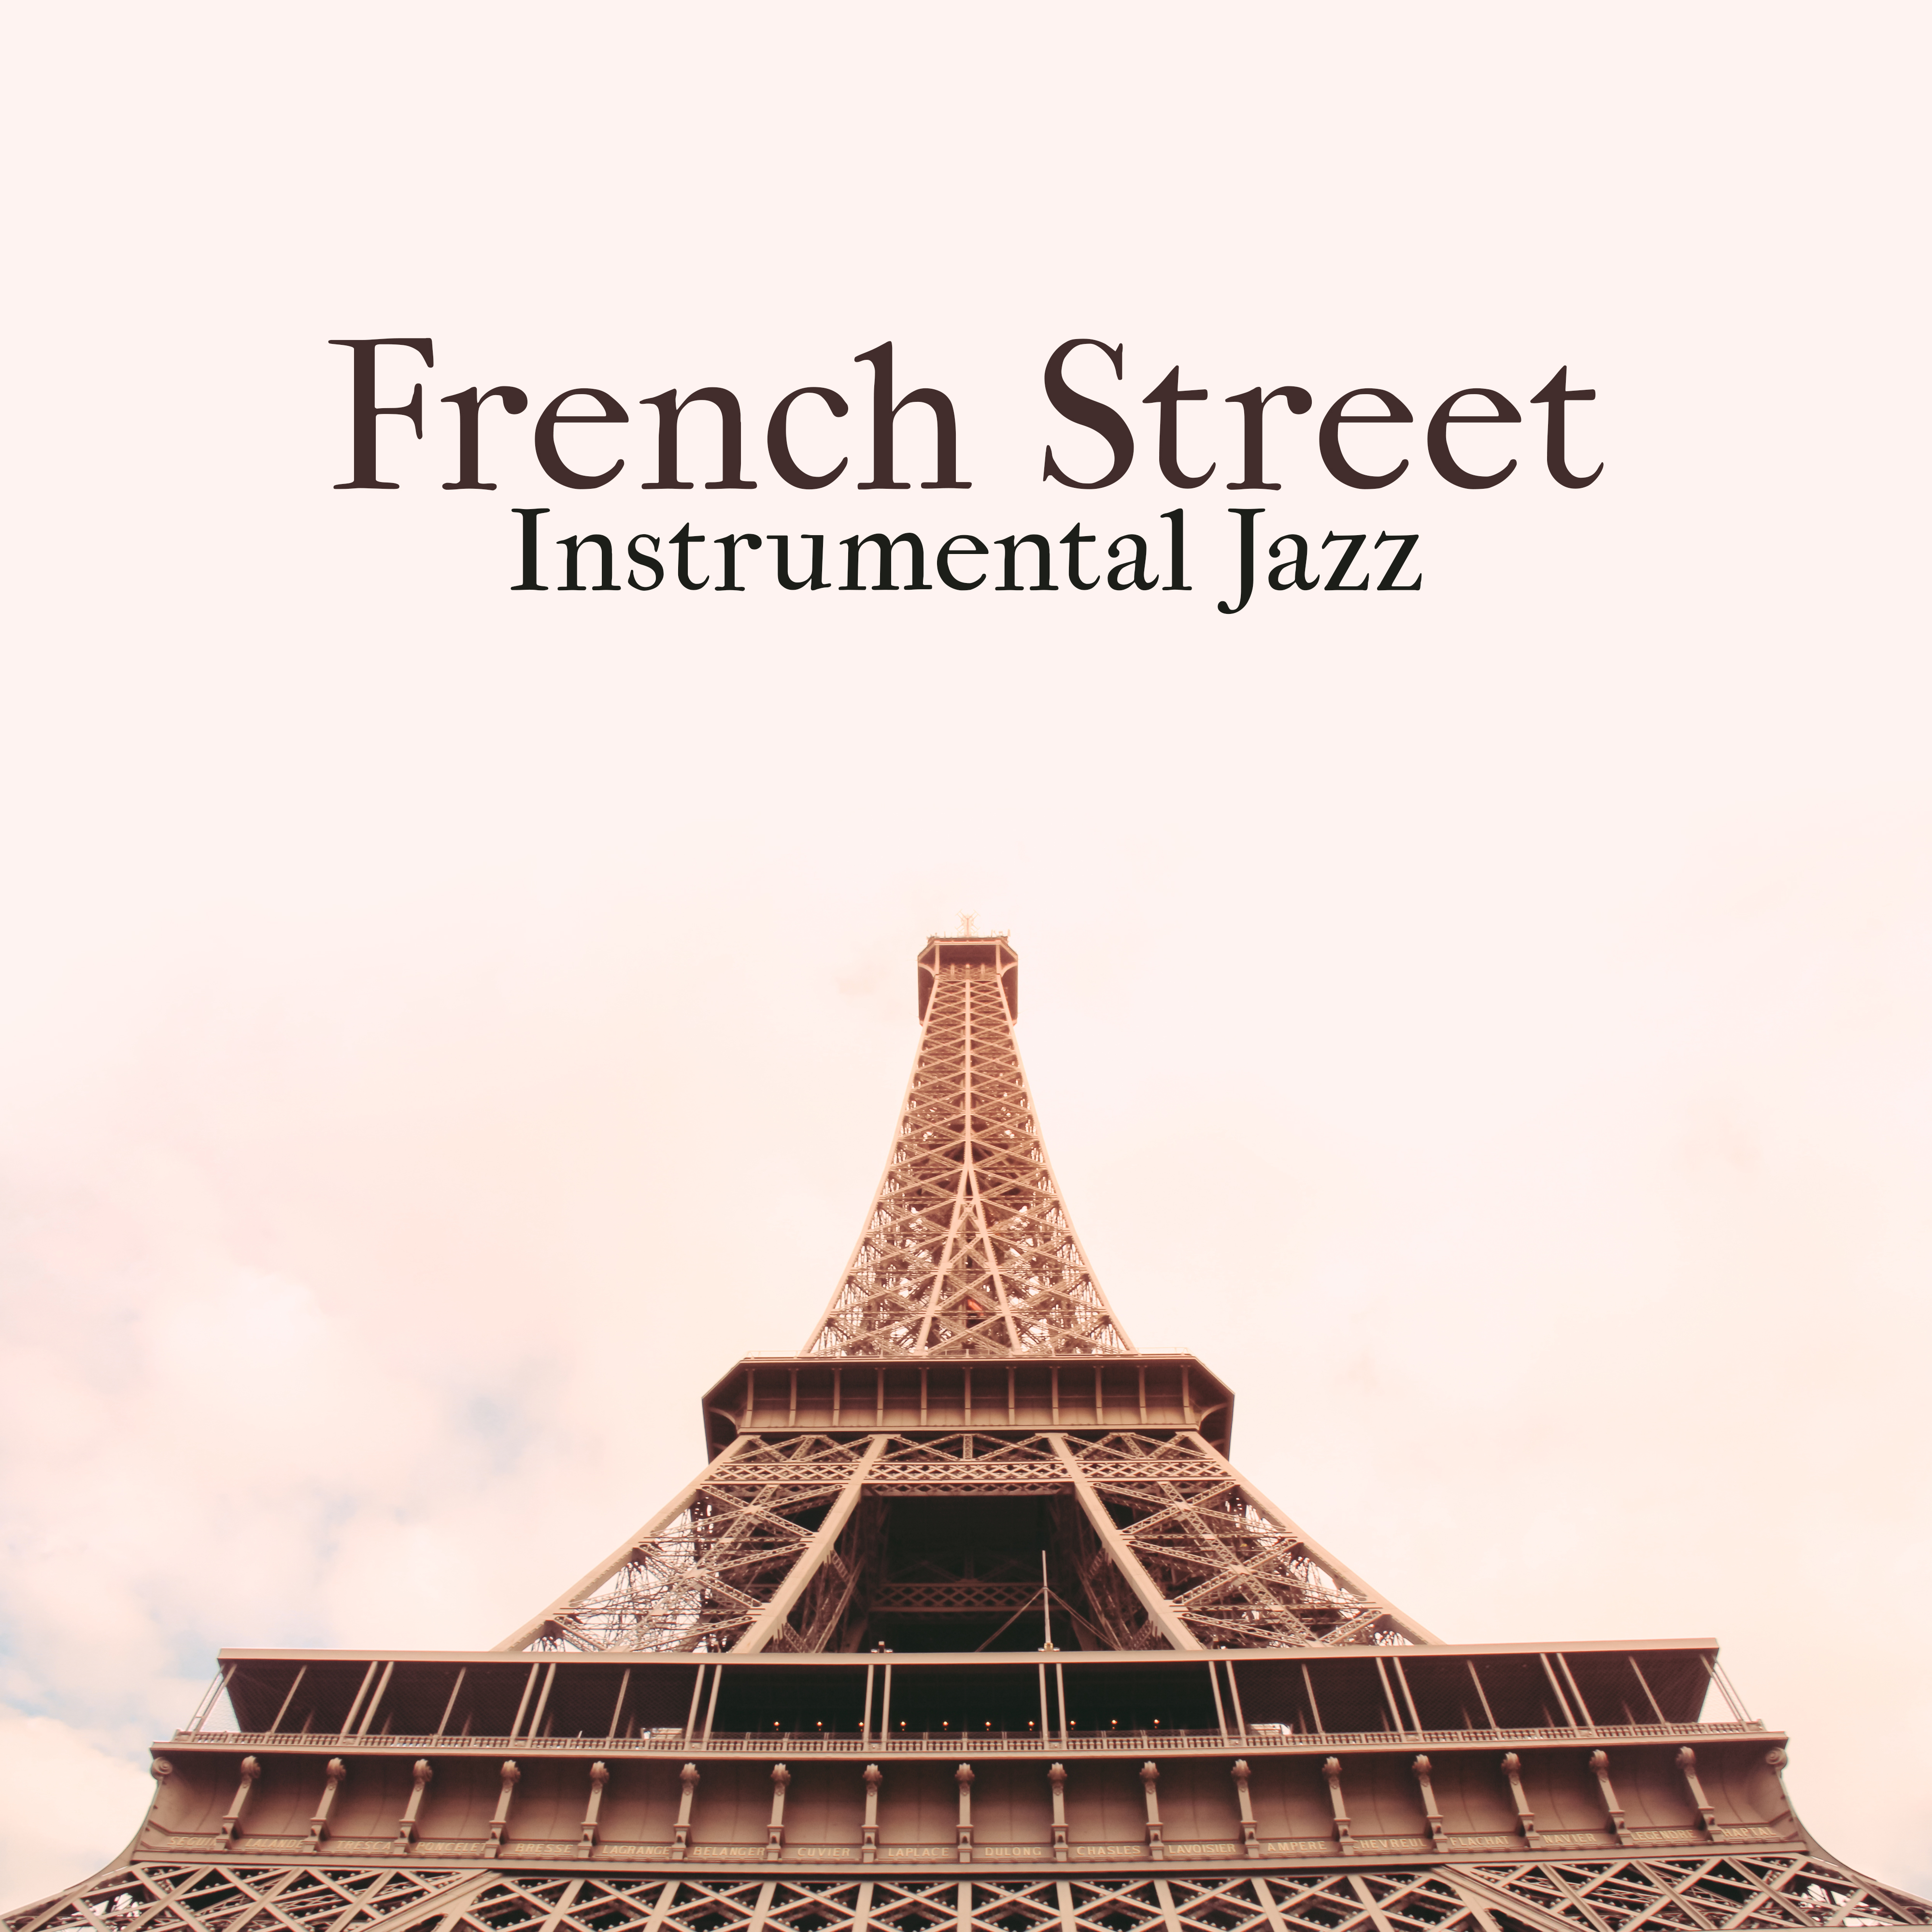 French Street Instrumental Jazz